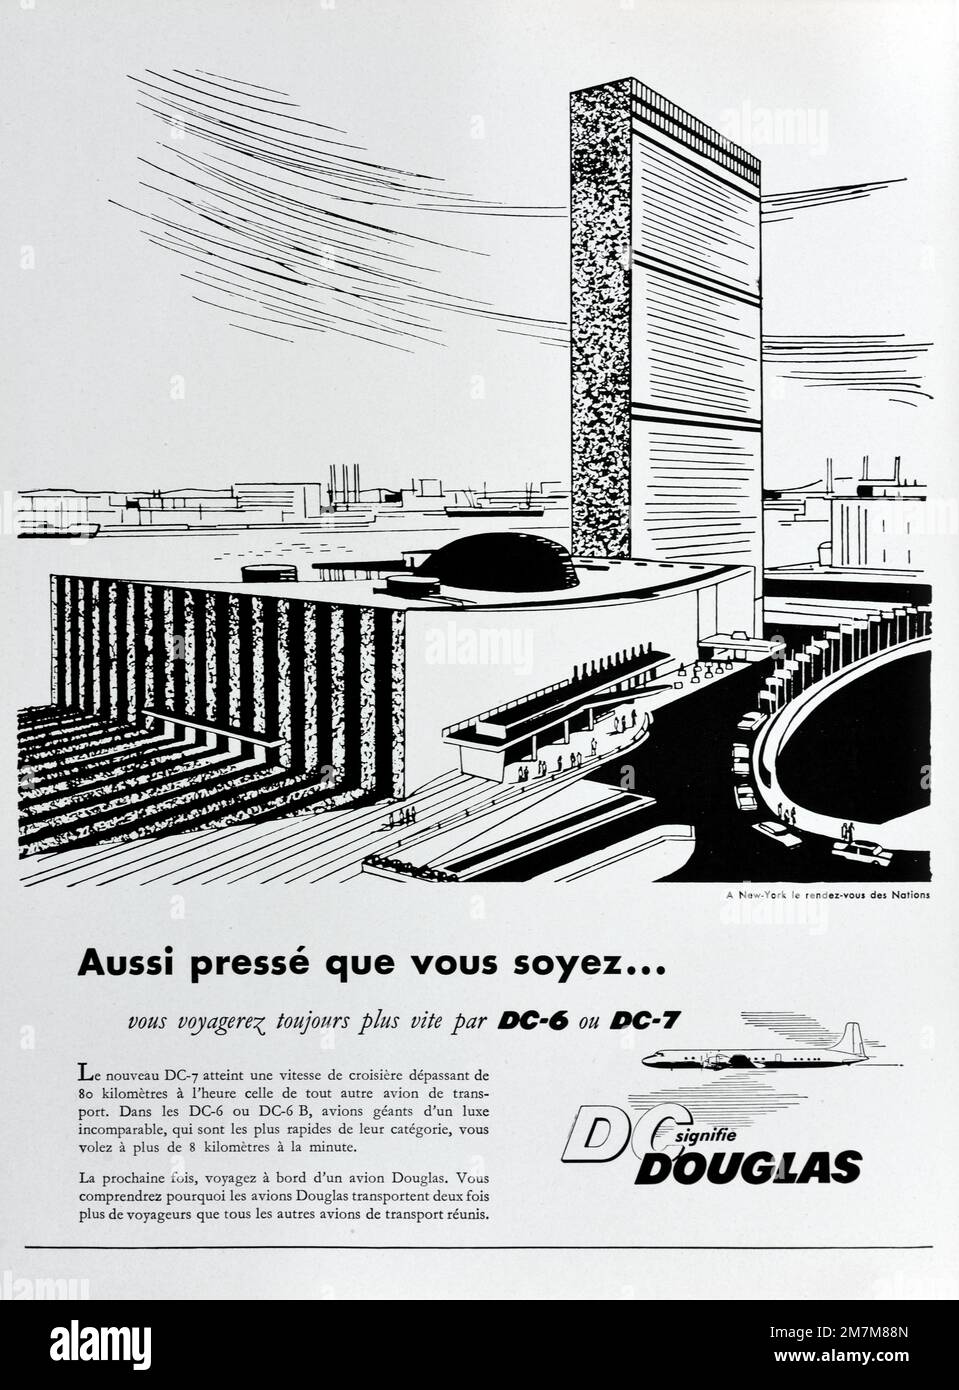 Publicité, publicité, publicité ou illustration vintage ou ancienne pour DC-6 et DC-7 Douglas Aircraft Company annonce 1956. Illustration du Siège de l'édifice des Nations Unies (ouvert en 1951) à New York. Banque D'Images